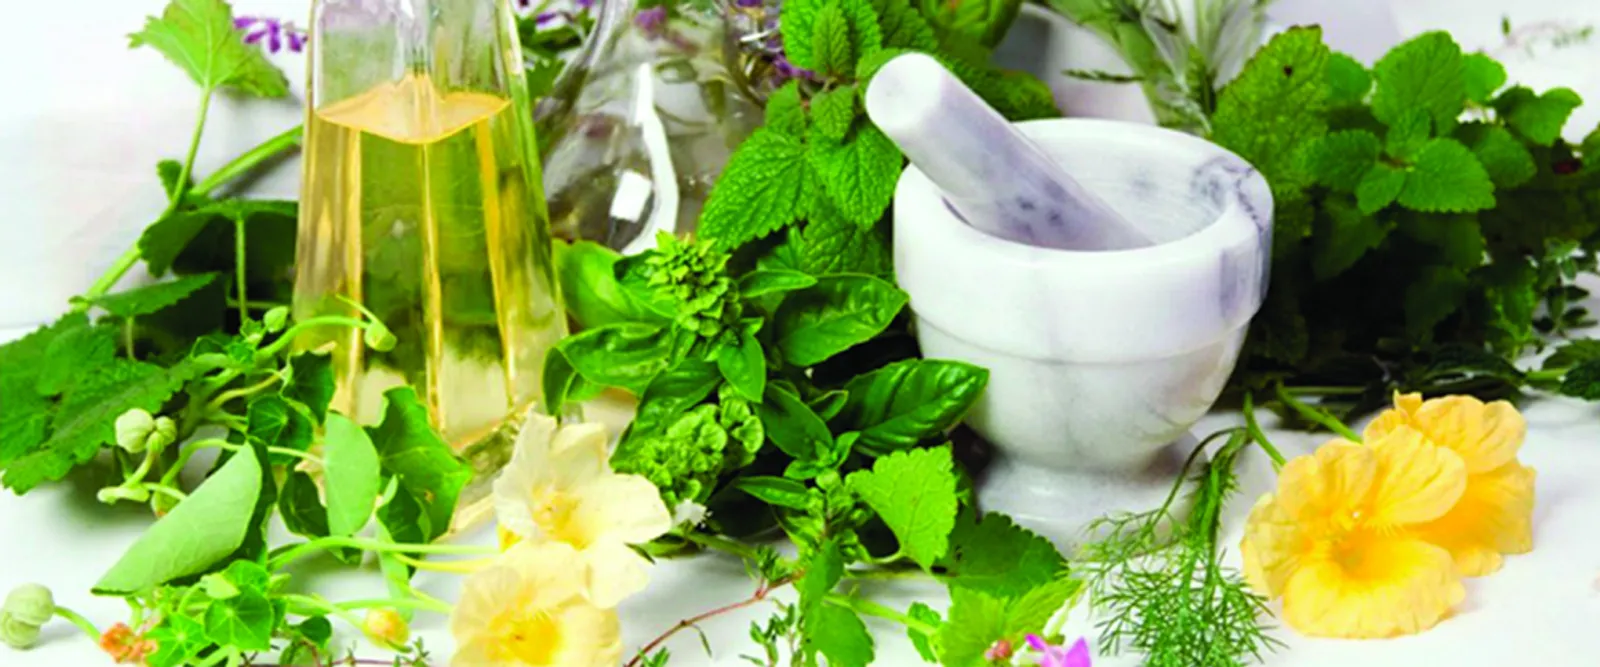 7 Jenis Tanaman Buah yang Bisa Jadi Obat Herbal